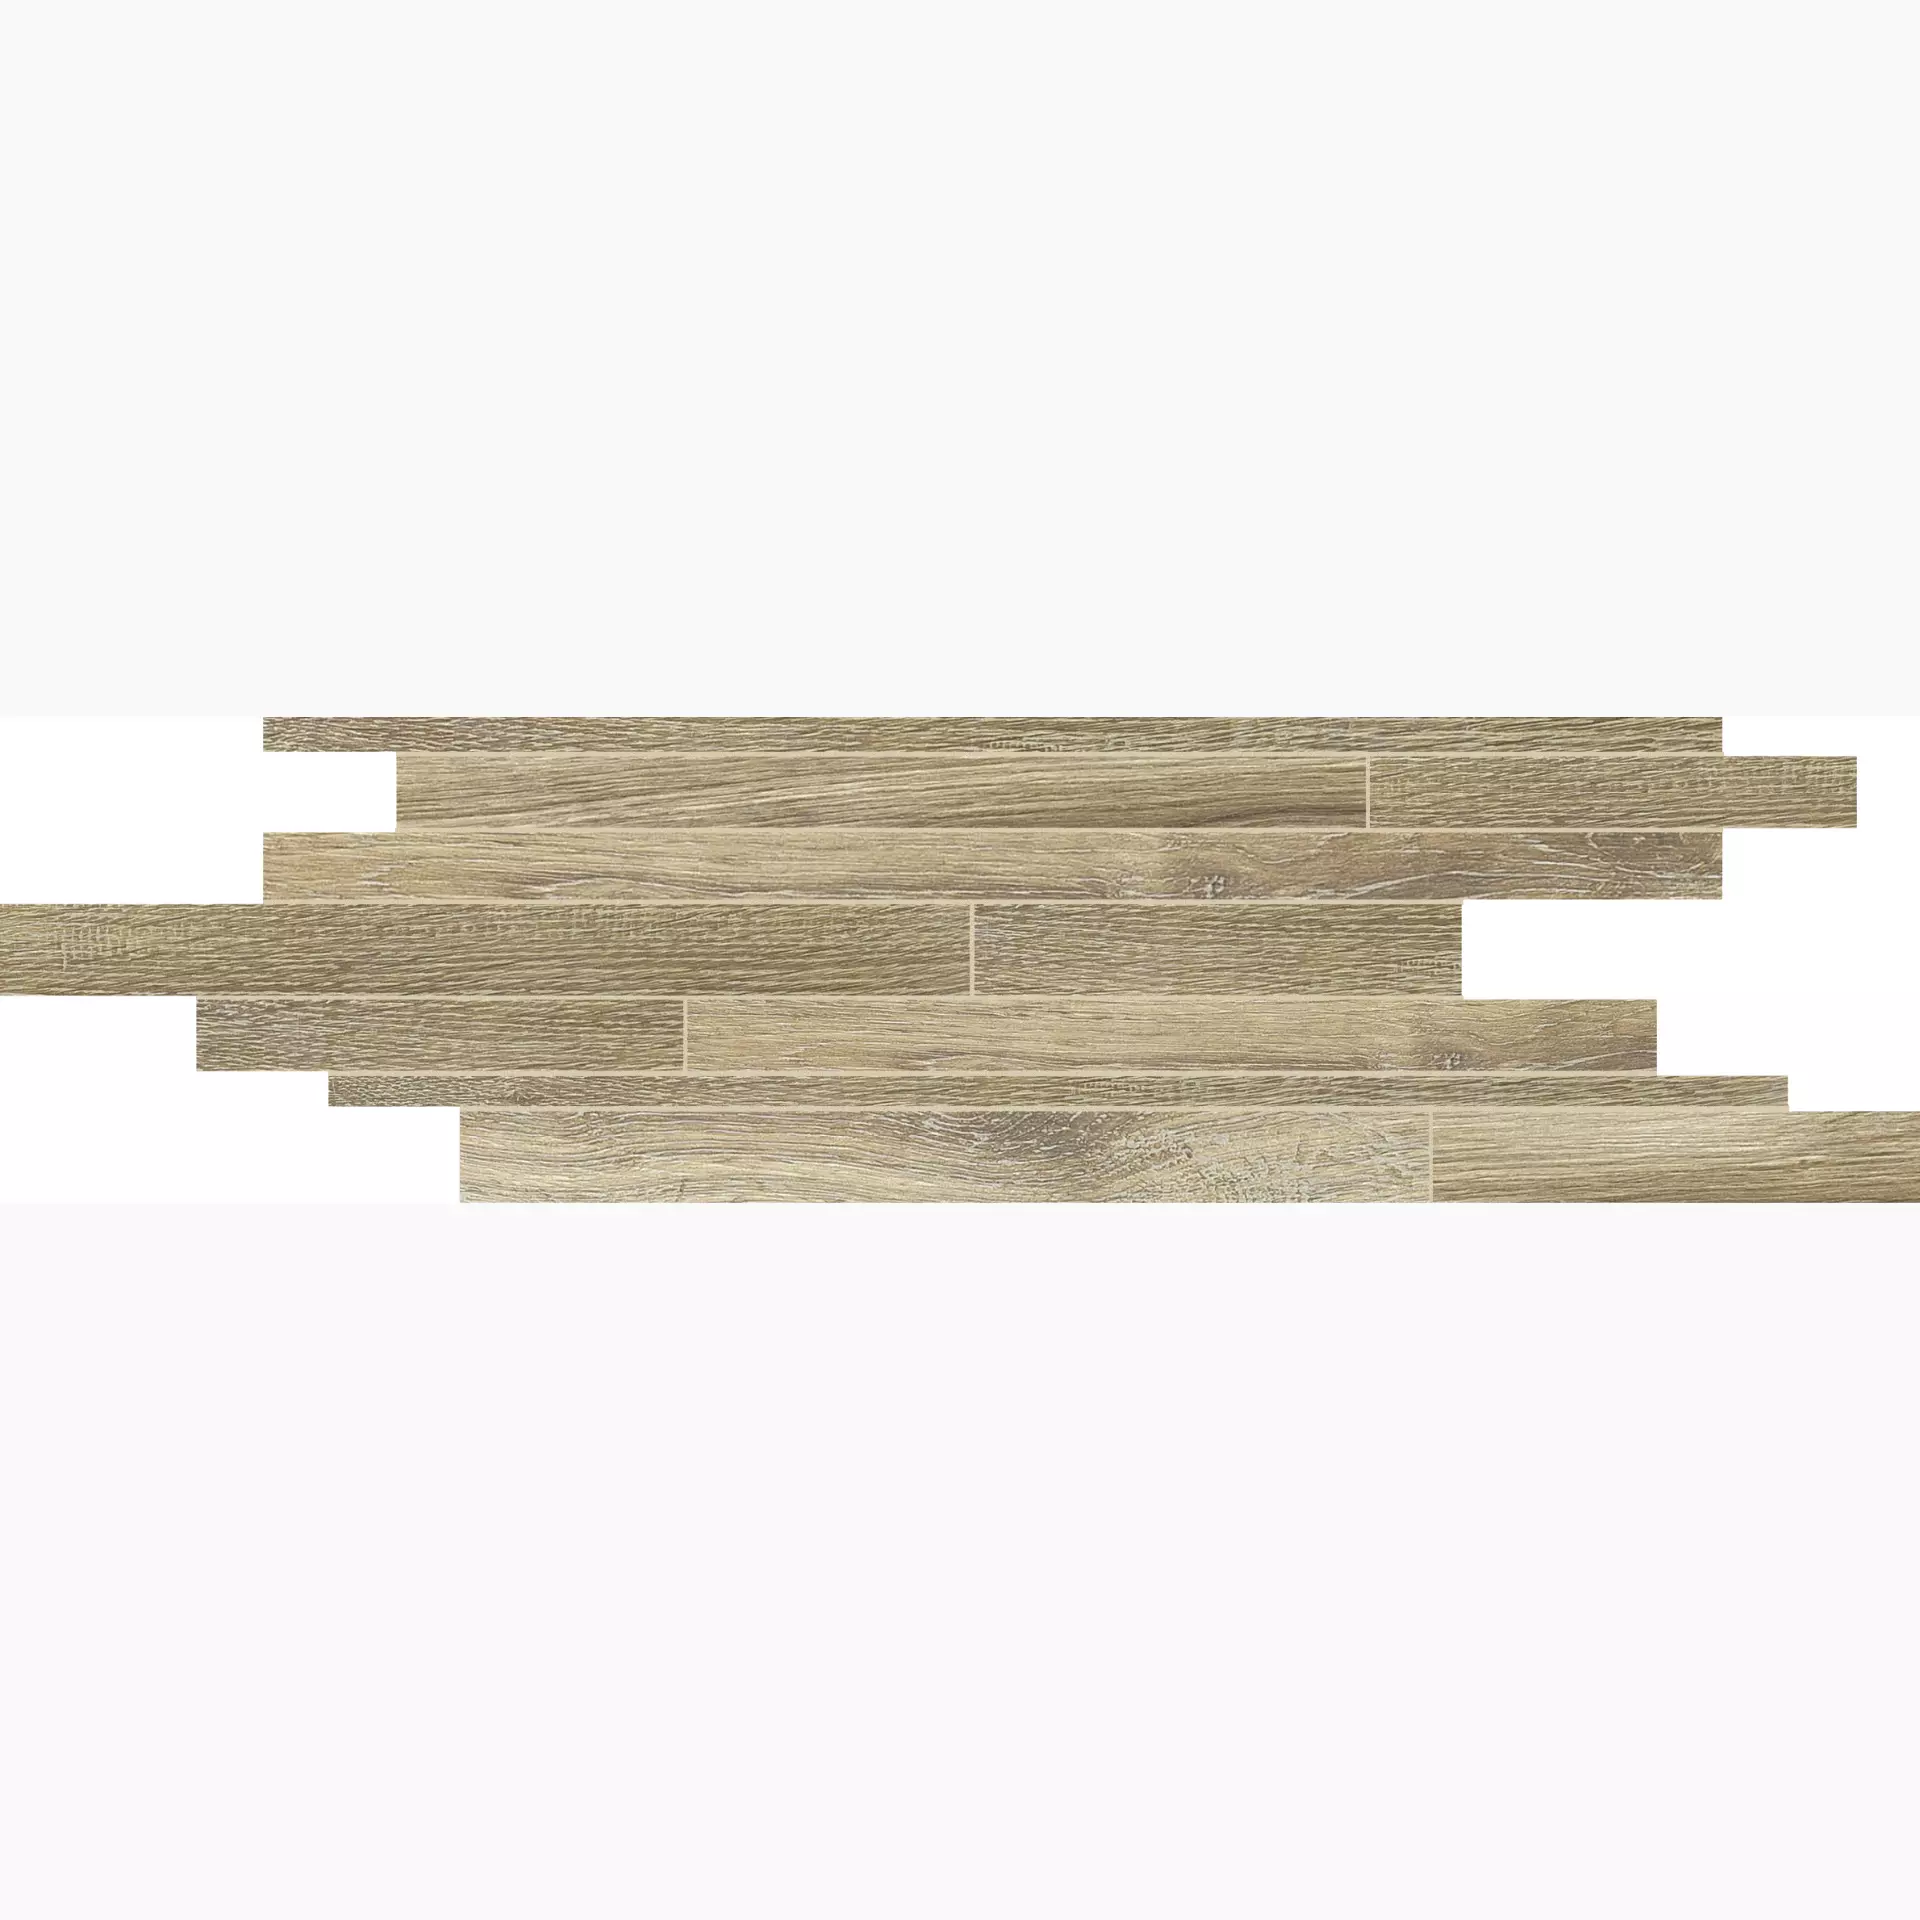 Florim Planches De Rex Miele Naturale – Matt Module Border Sfalsato 756083 15x45cm rectified 9mm